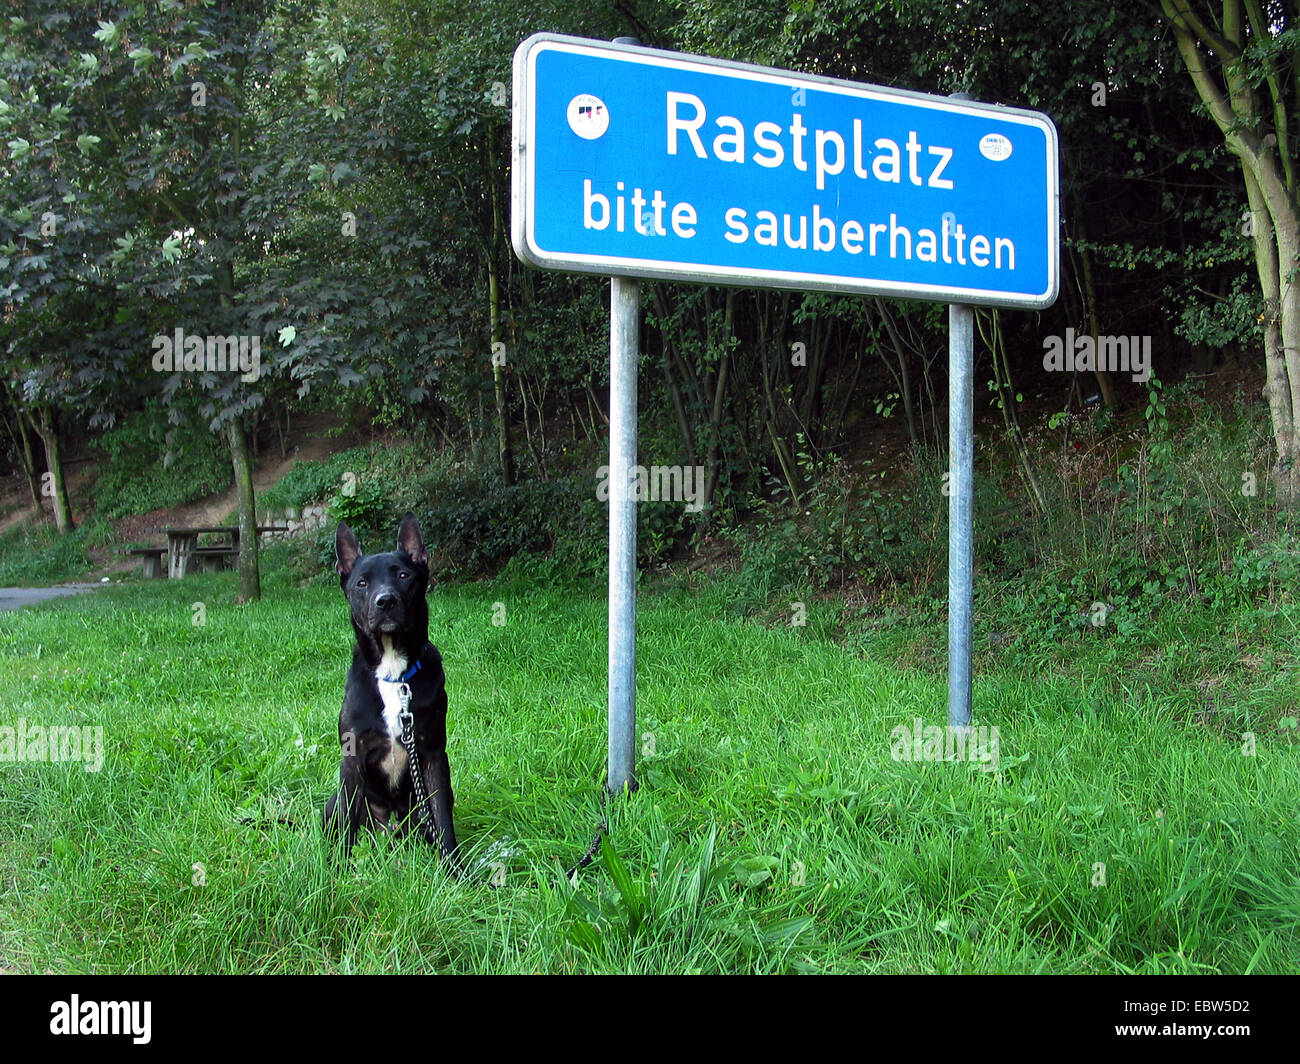 Hund am Rastplatz einer Autobahn, Deutschland, gefesselt Stockfotografie -  Alamy